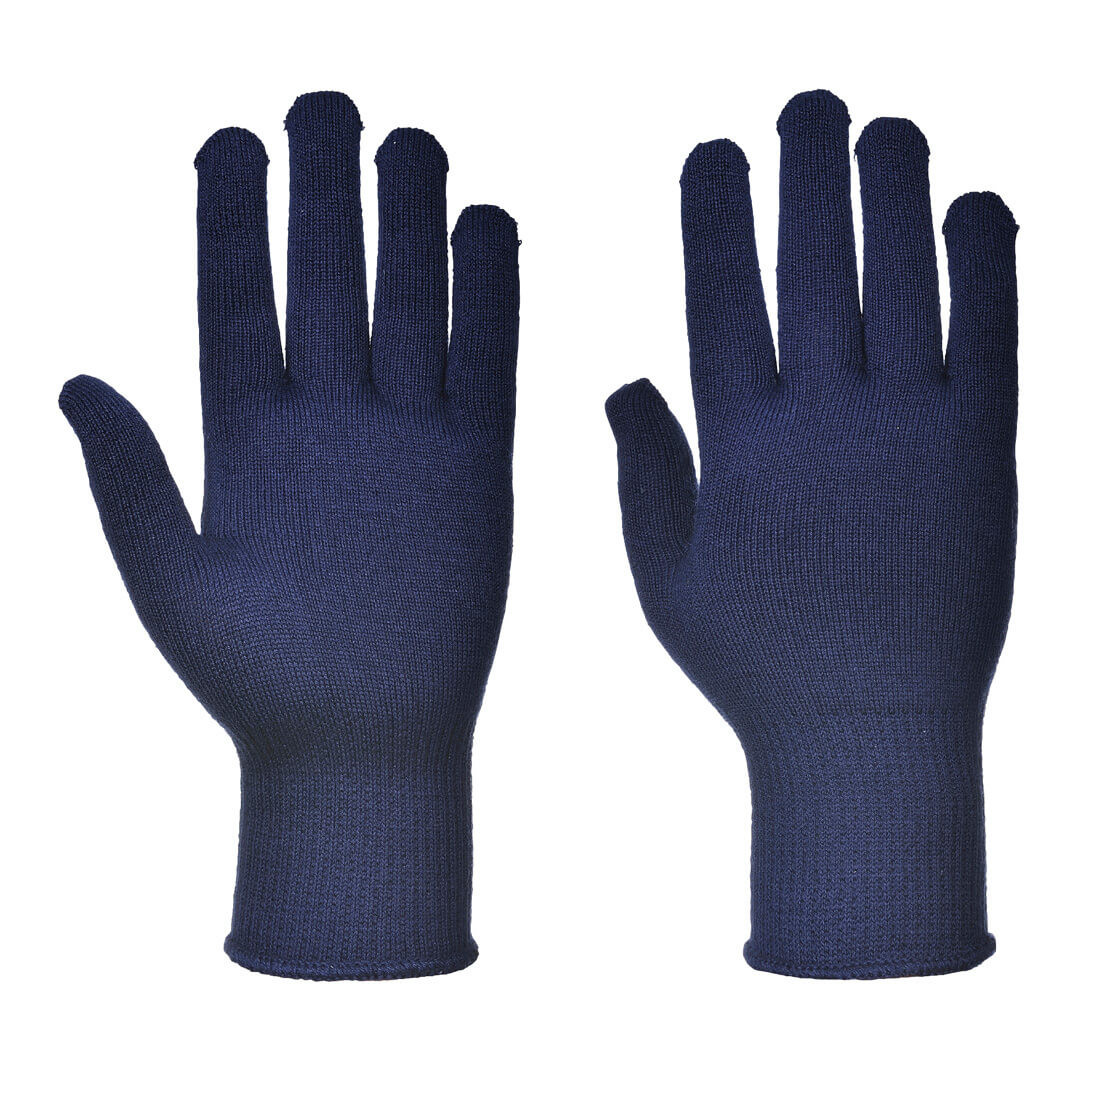 Gant ou sous-gant - Les équipements de protection individuelle